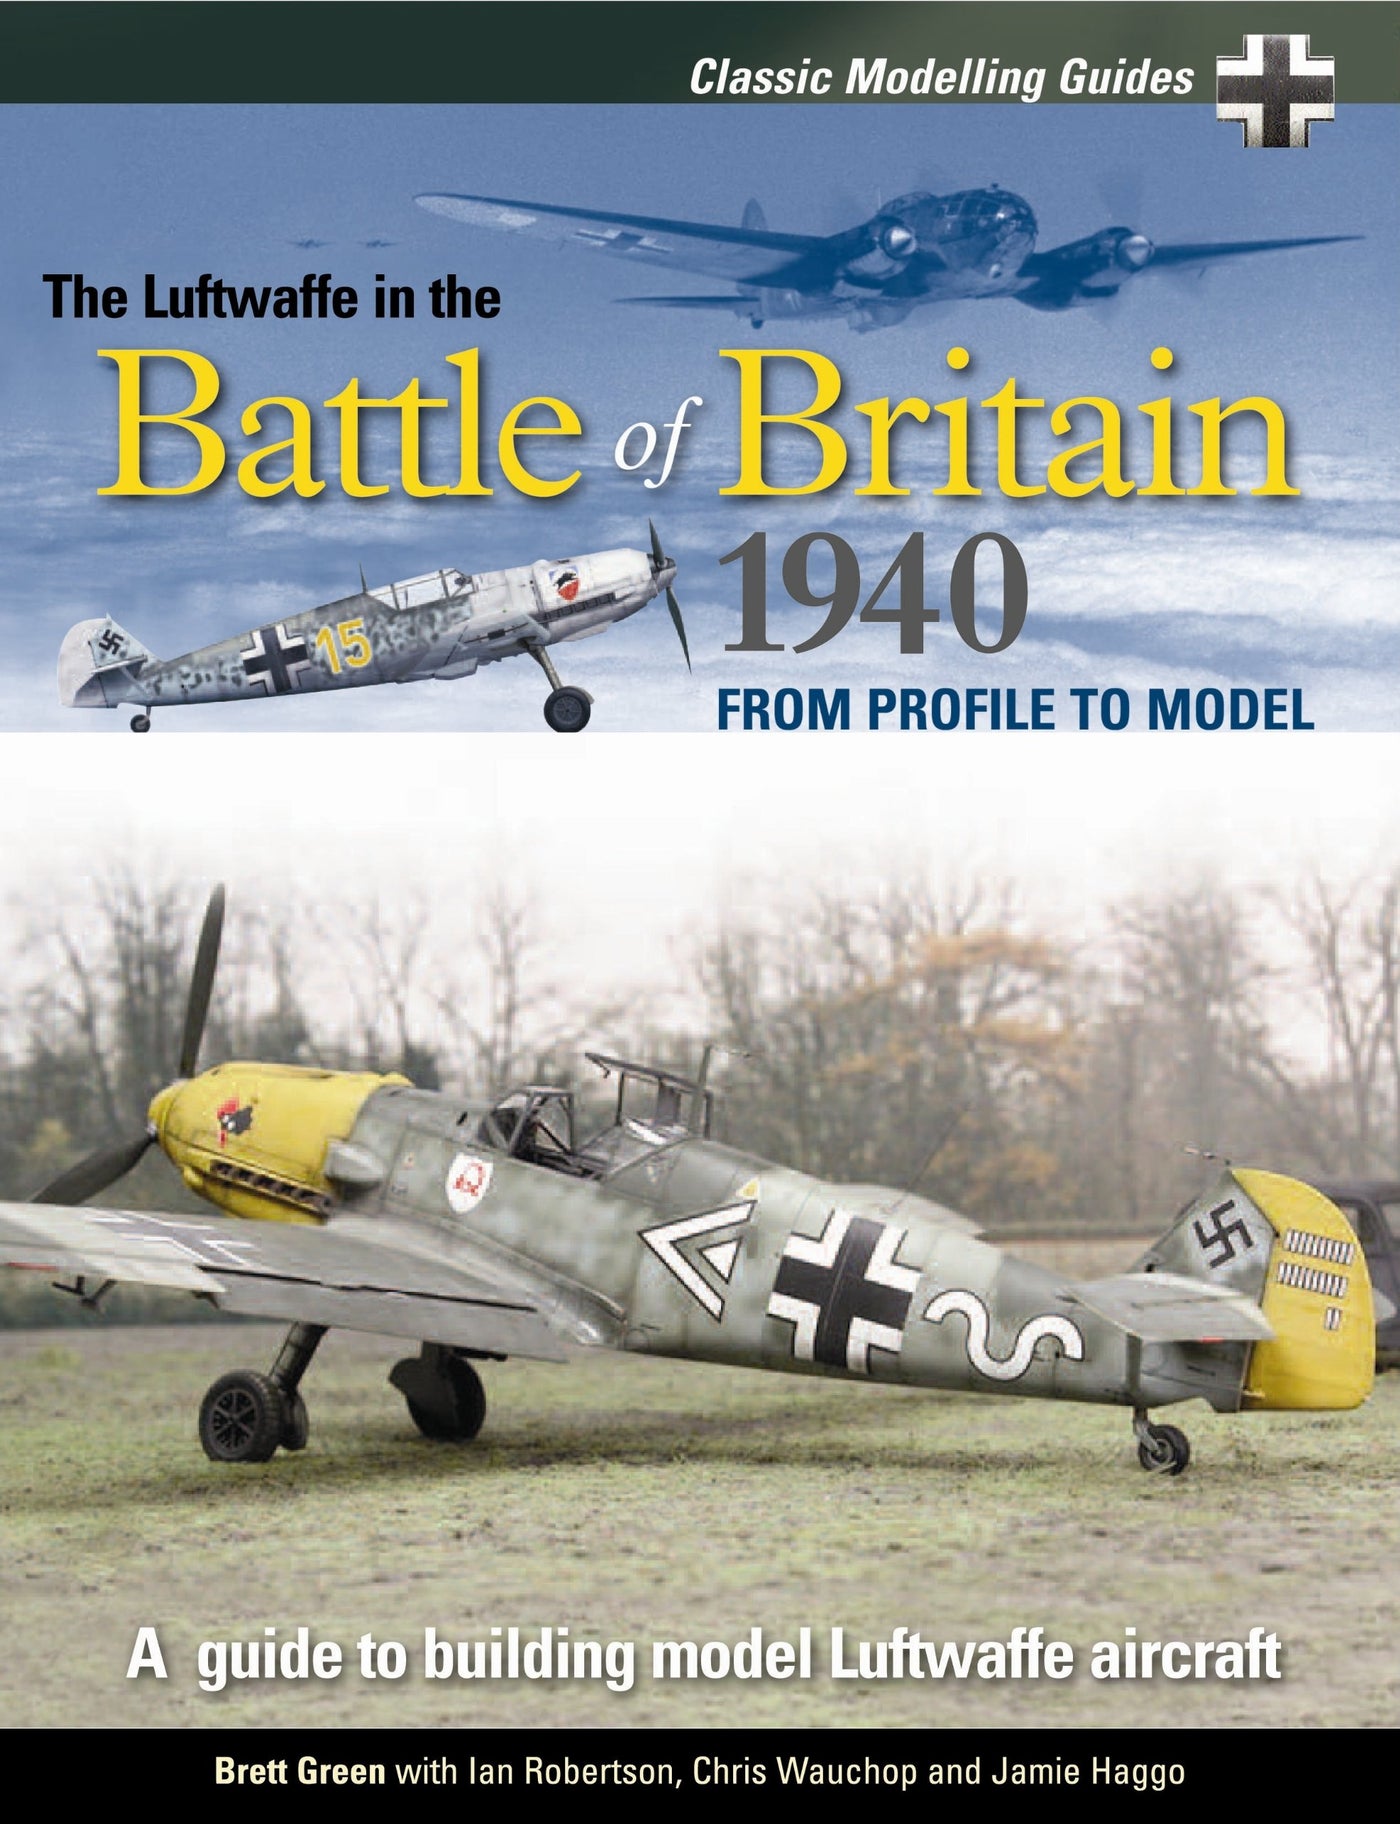 Classic Modeling Guide 1: Die Luftwaffe in der Schlacht um Großbritannien 1940 